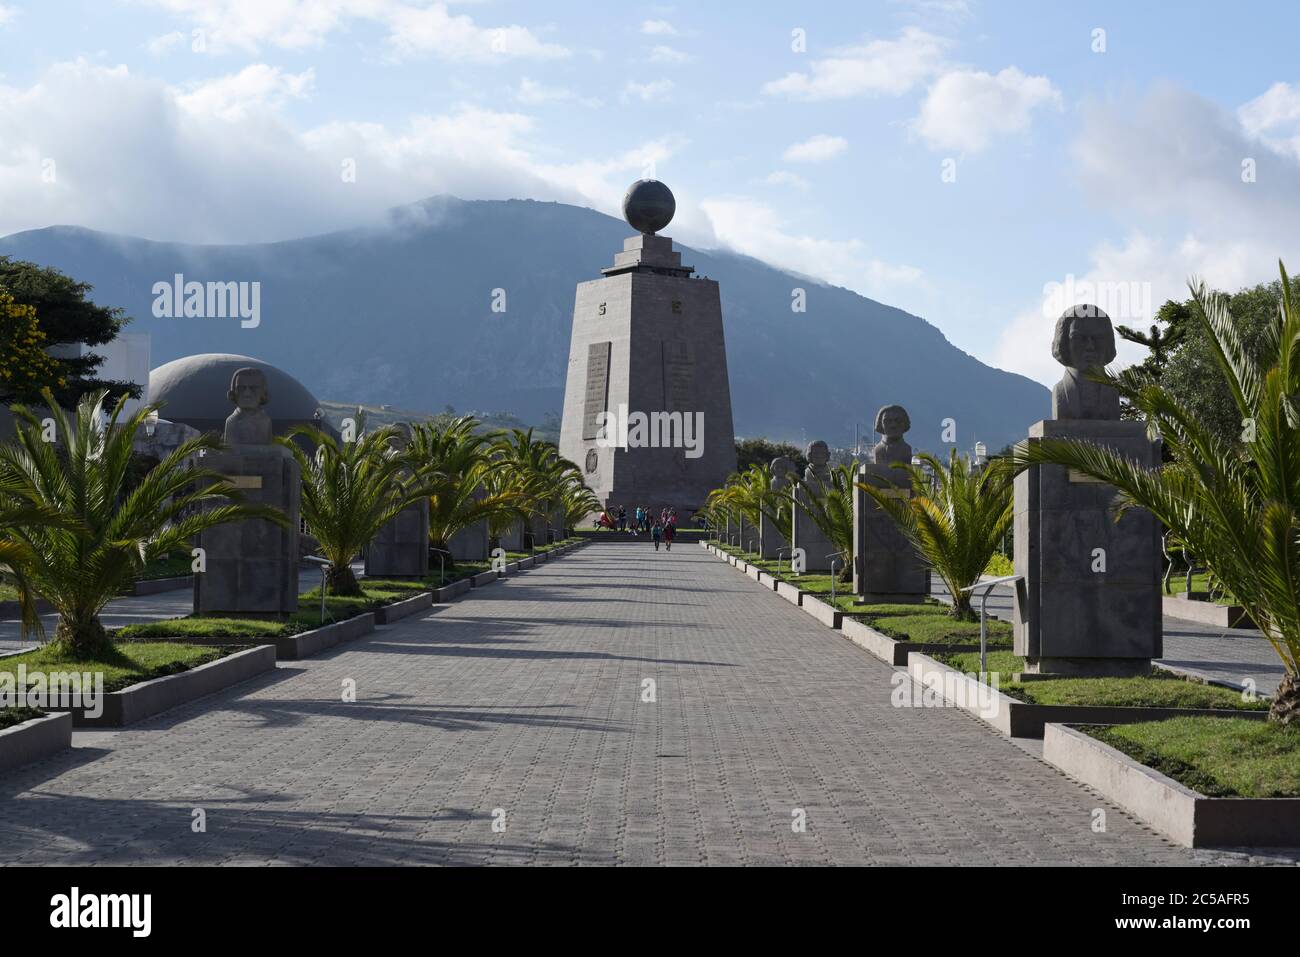 Monument to the Equator, Quito, Ecuador Stock Photo